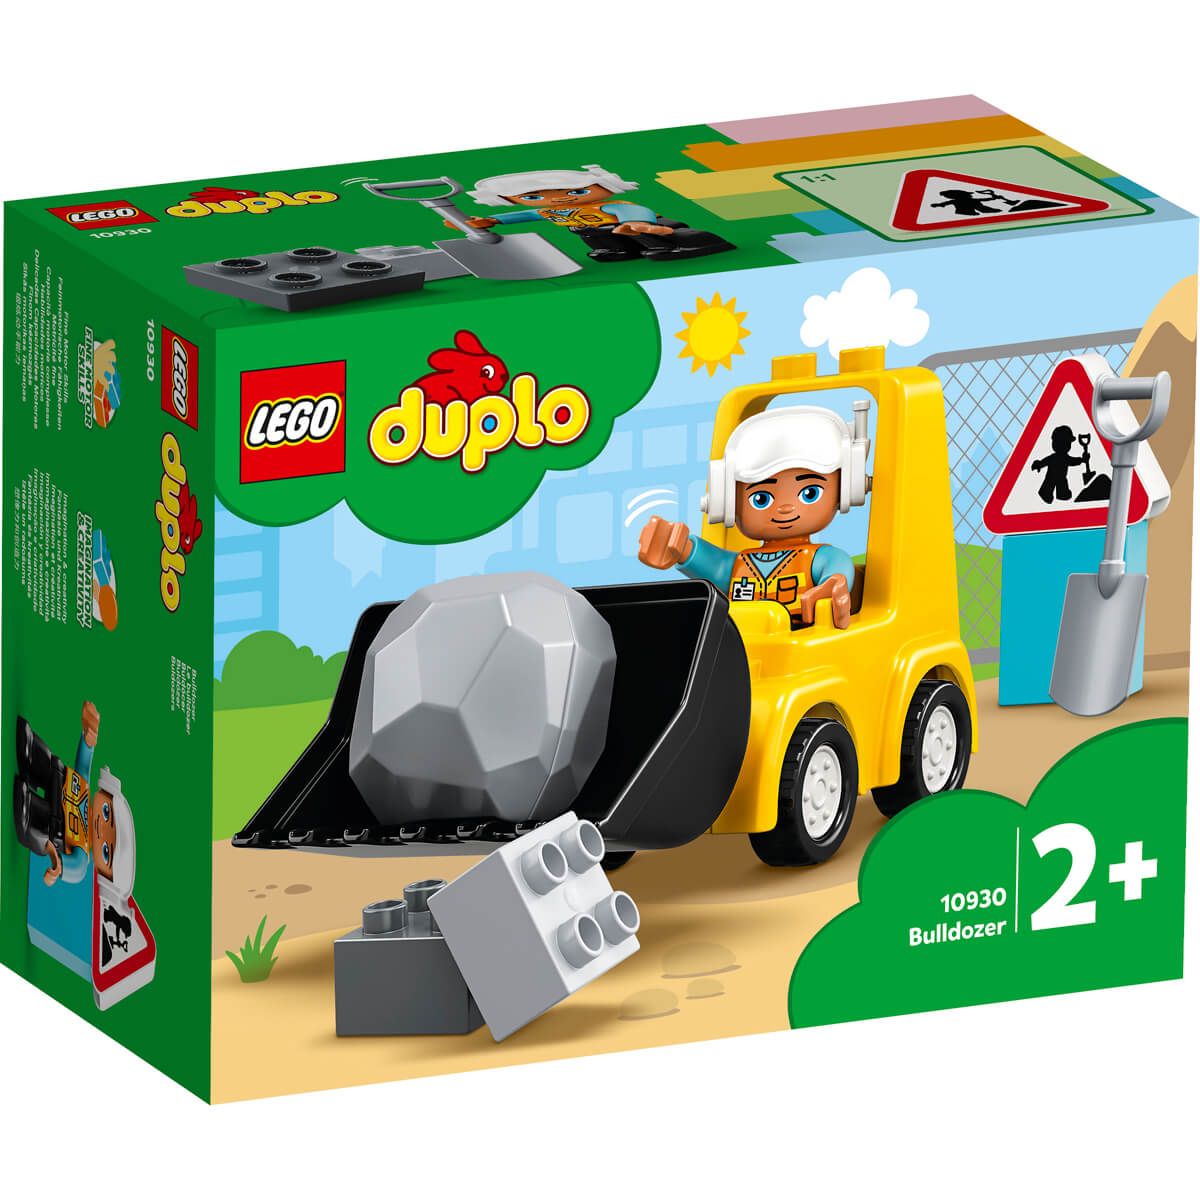 ΠΑΙΔΙ | Παιχνίδια | LEGO | DUPLO 10930 Bulldozer